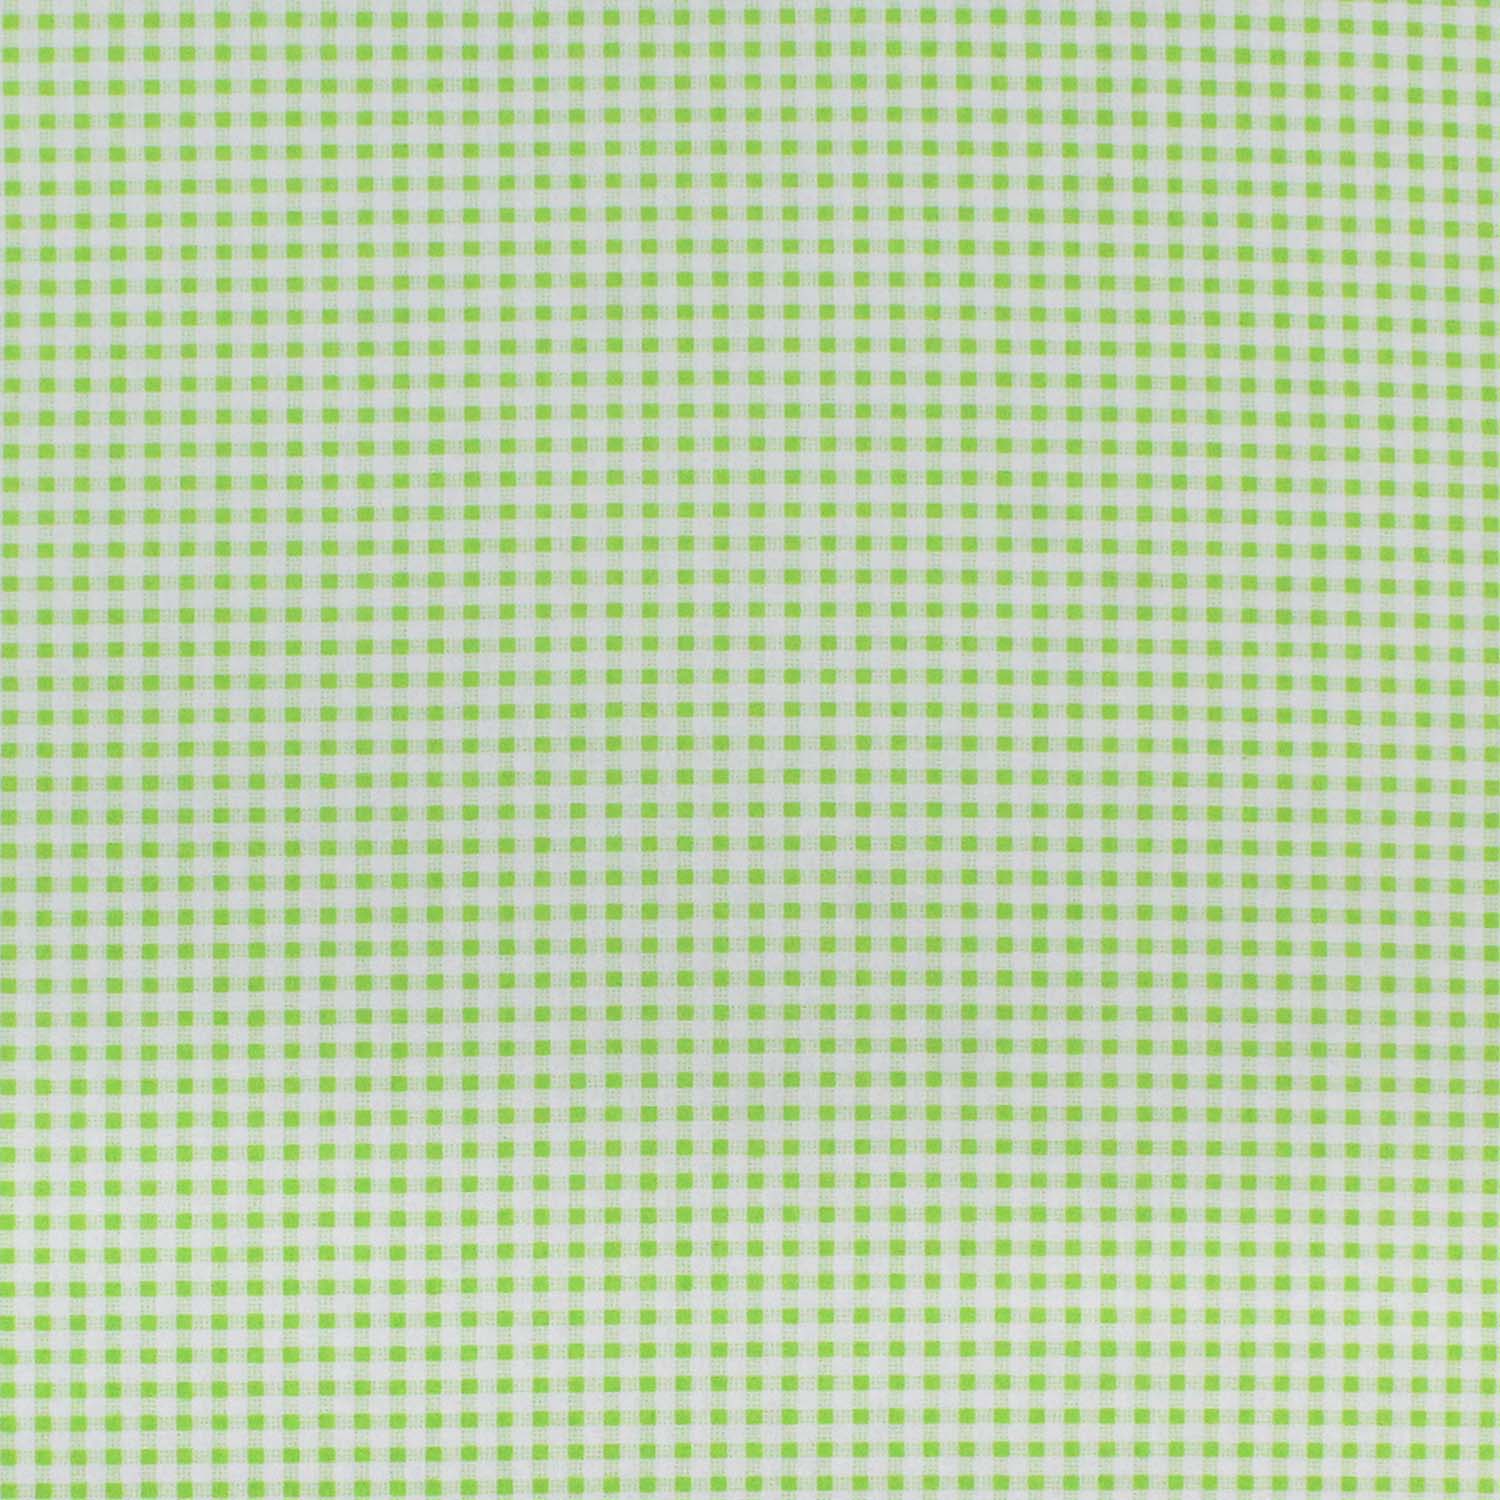 tecido-tricoline-textura-quadriculado-verde-limao-della-aviamentos-10932